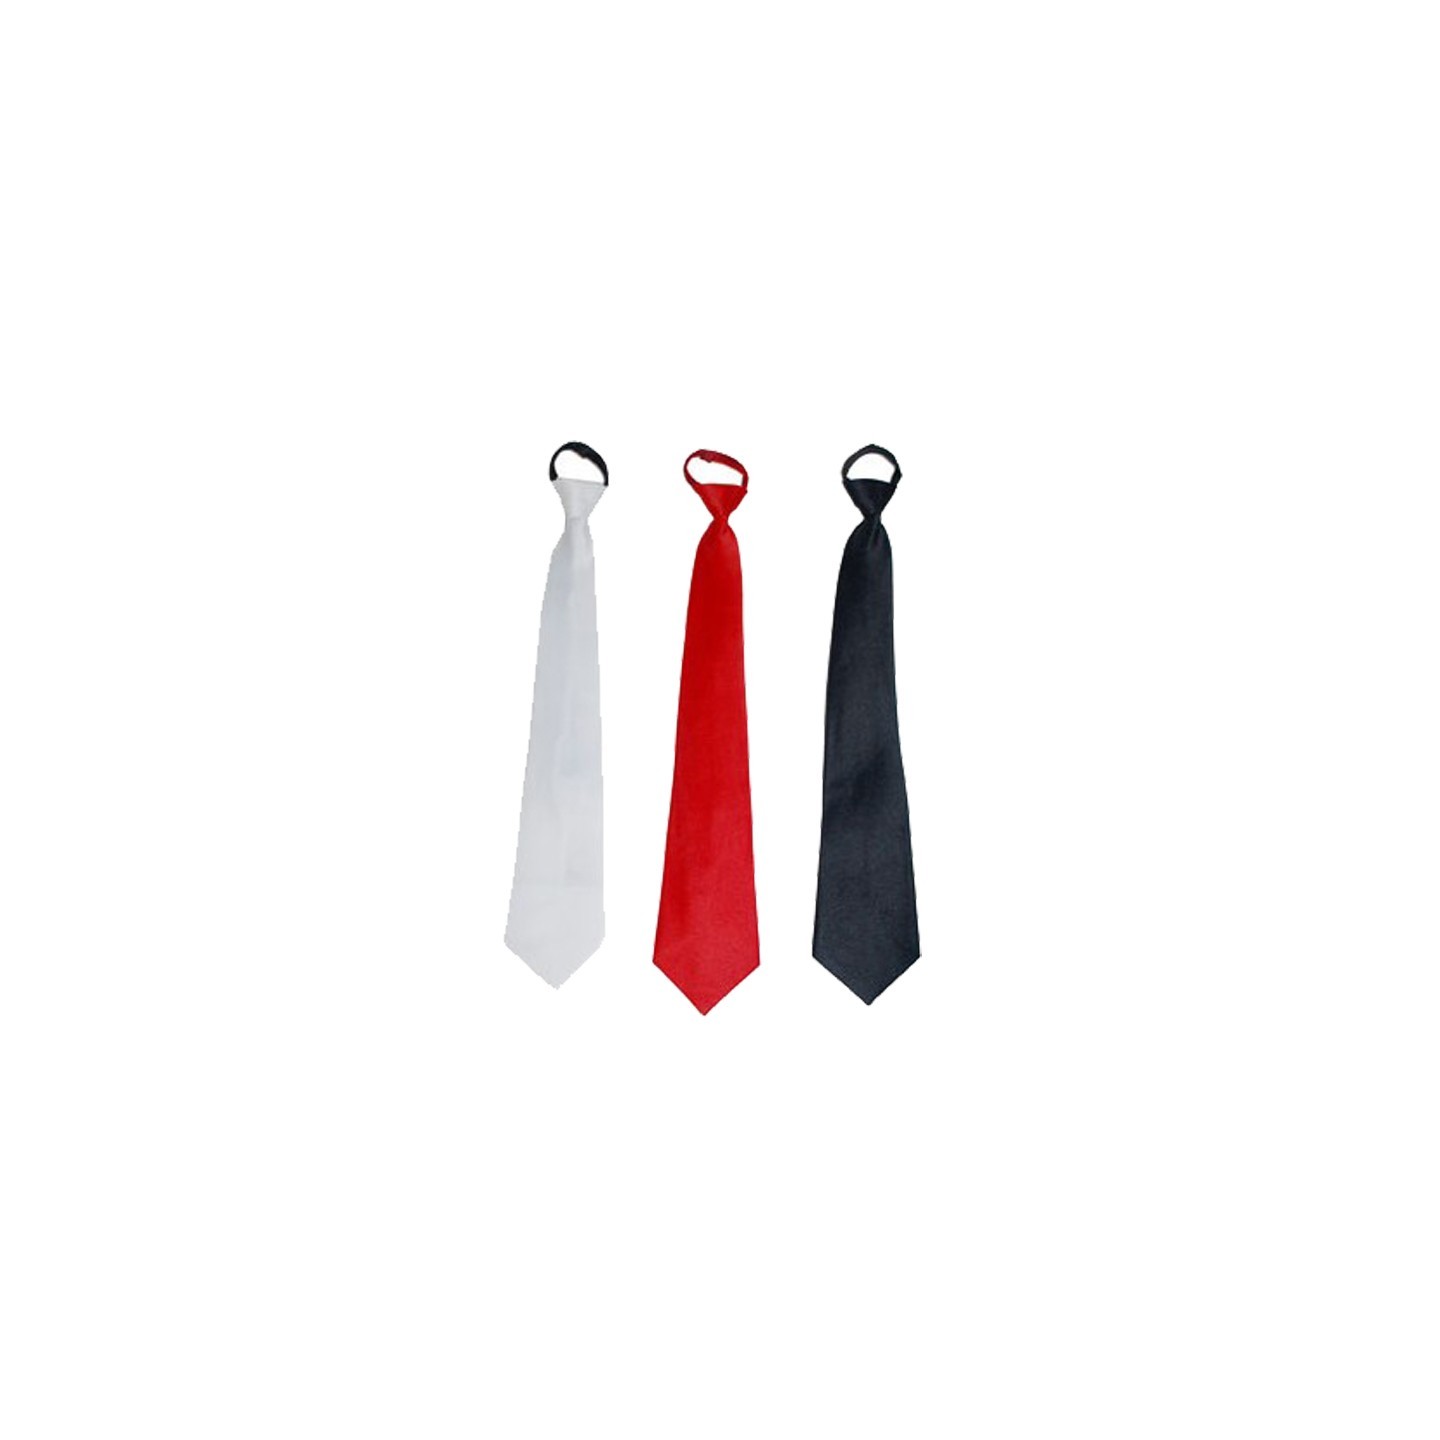 Passief Overgang ontwikkelen Goedkope zwarte - witte of rode stropdas kopen ? | Jokershop.be